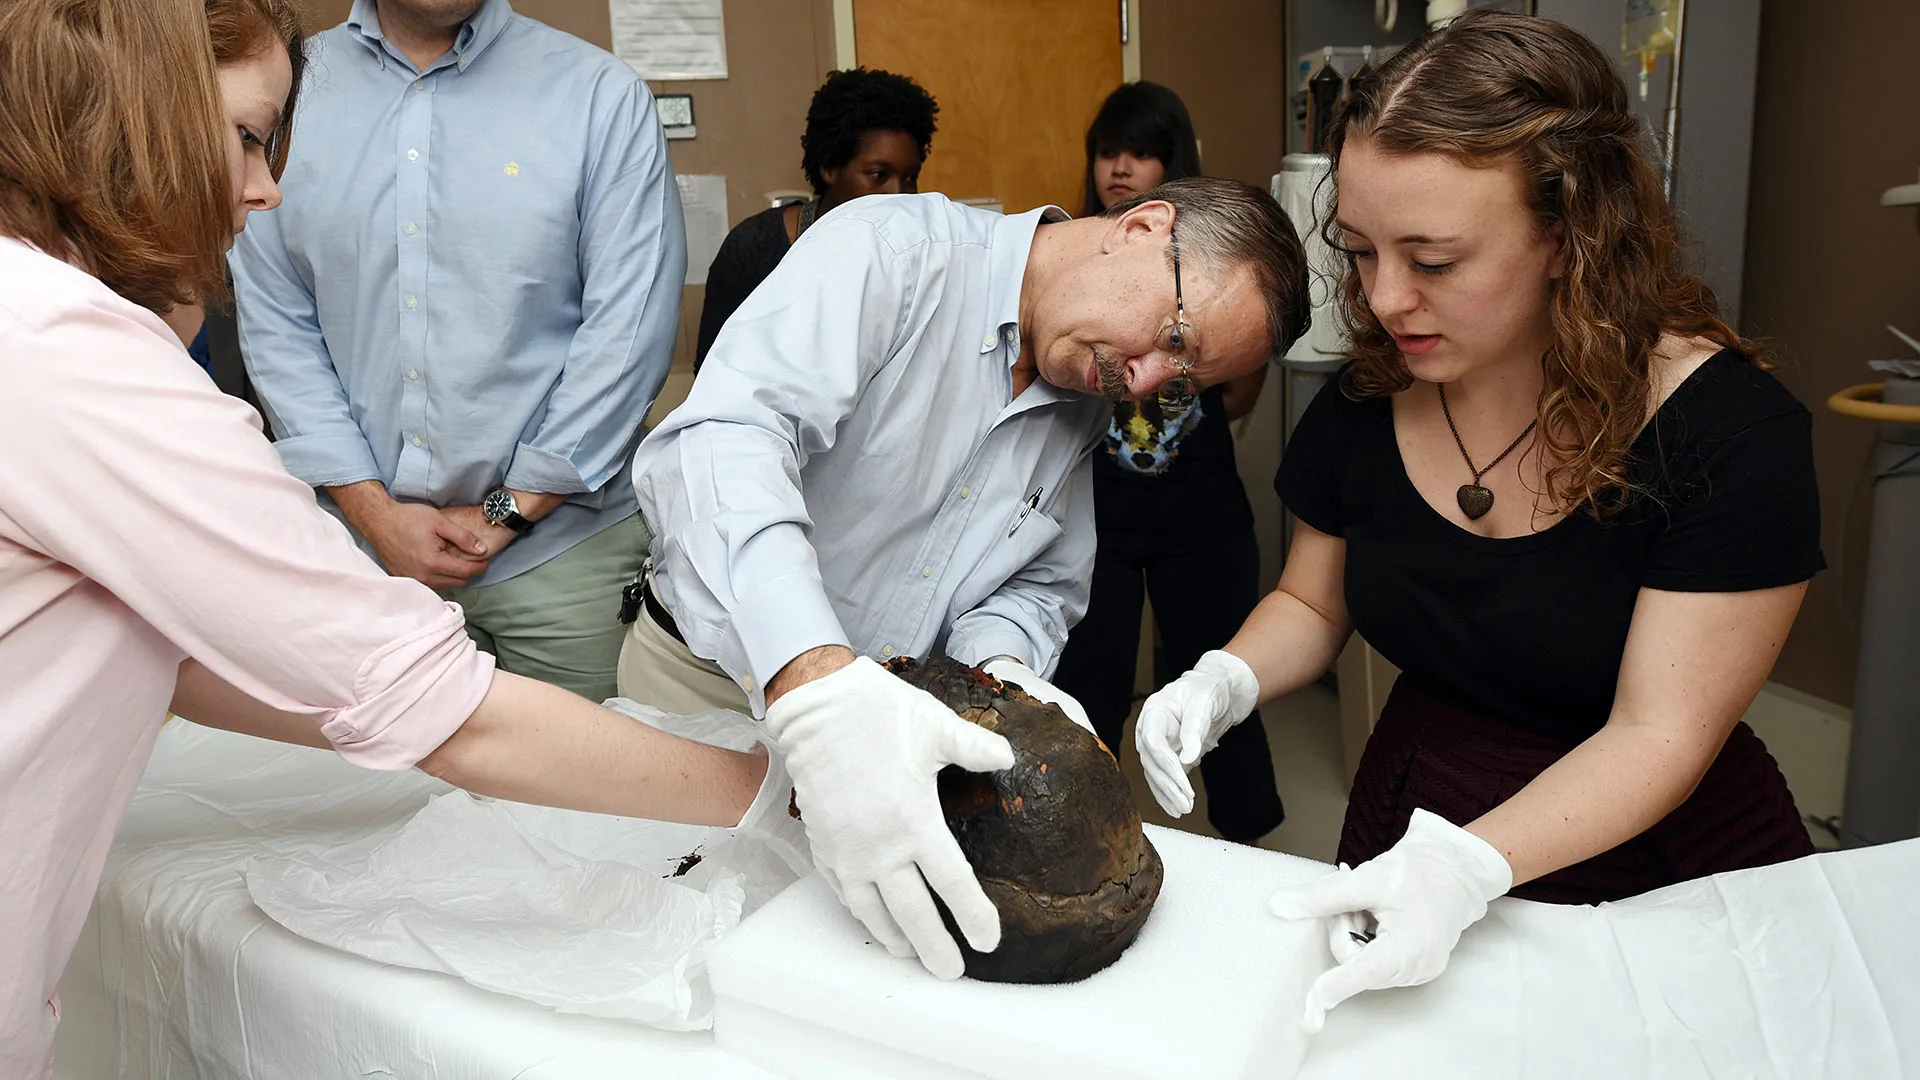 Rachel Witt, Bruce Bordlee, John Verano and Savannah Bailey perform CT scan on a male Egyptian mummy